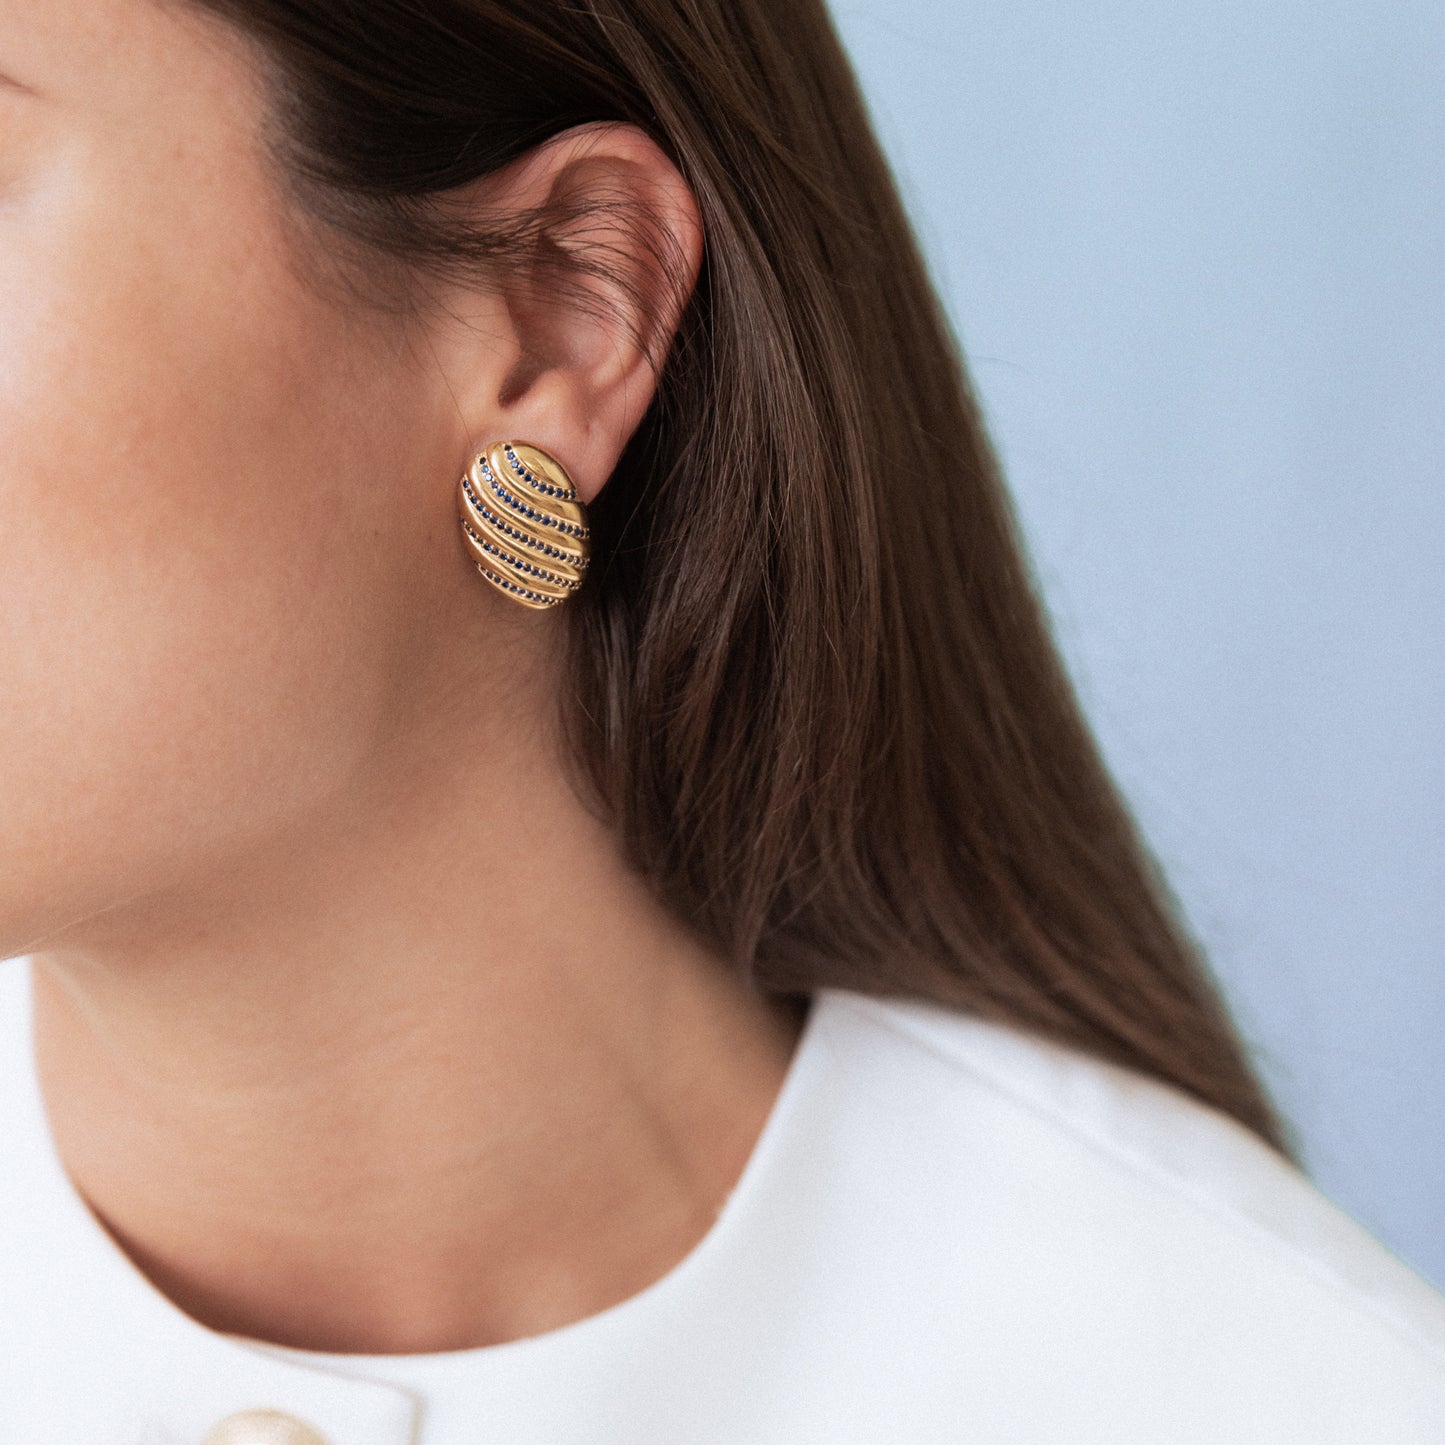 Joan earrings